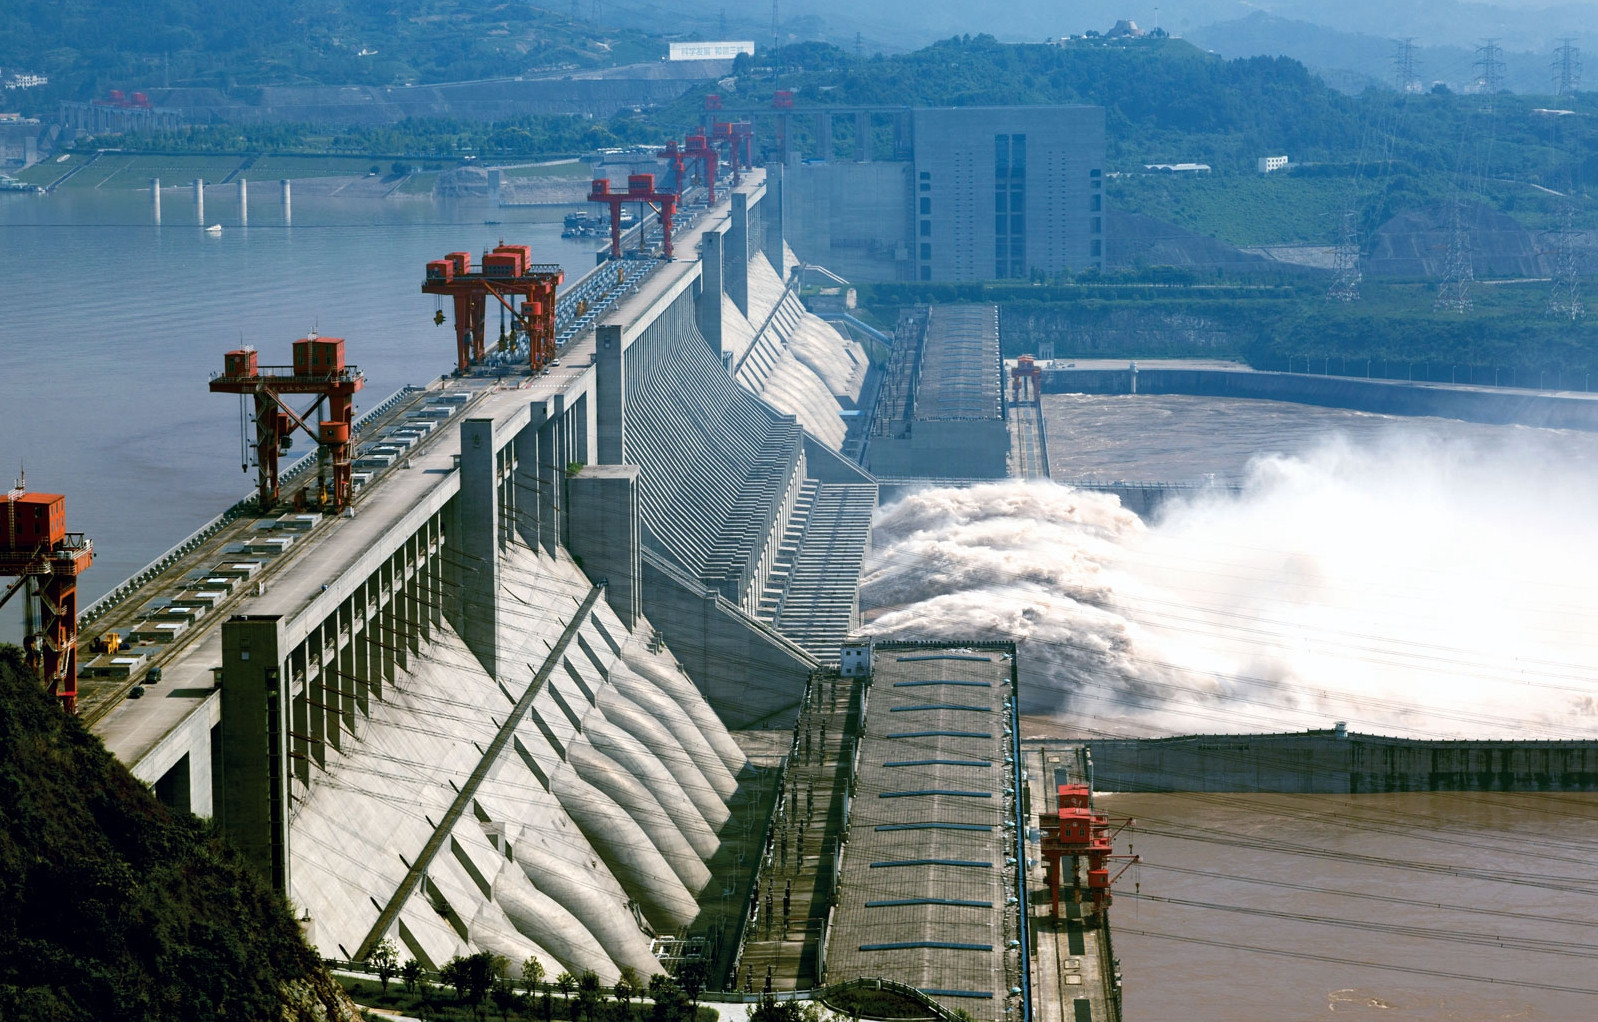 相比于水利发电三峡大坝修建之初的主要功能是防洪泄洪的